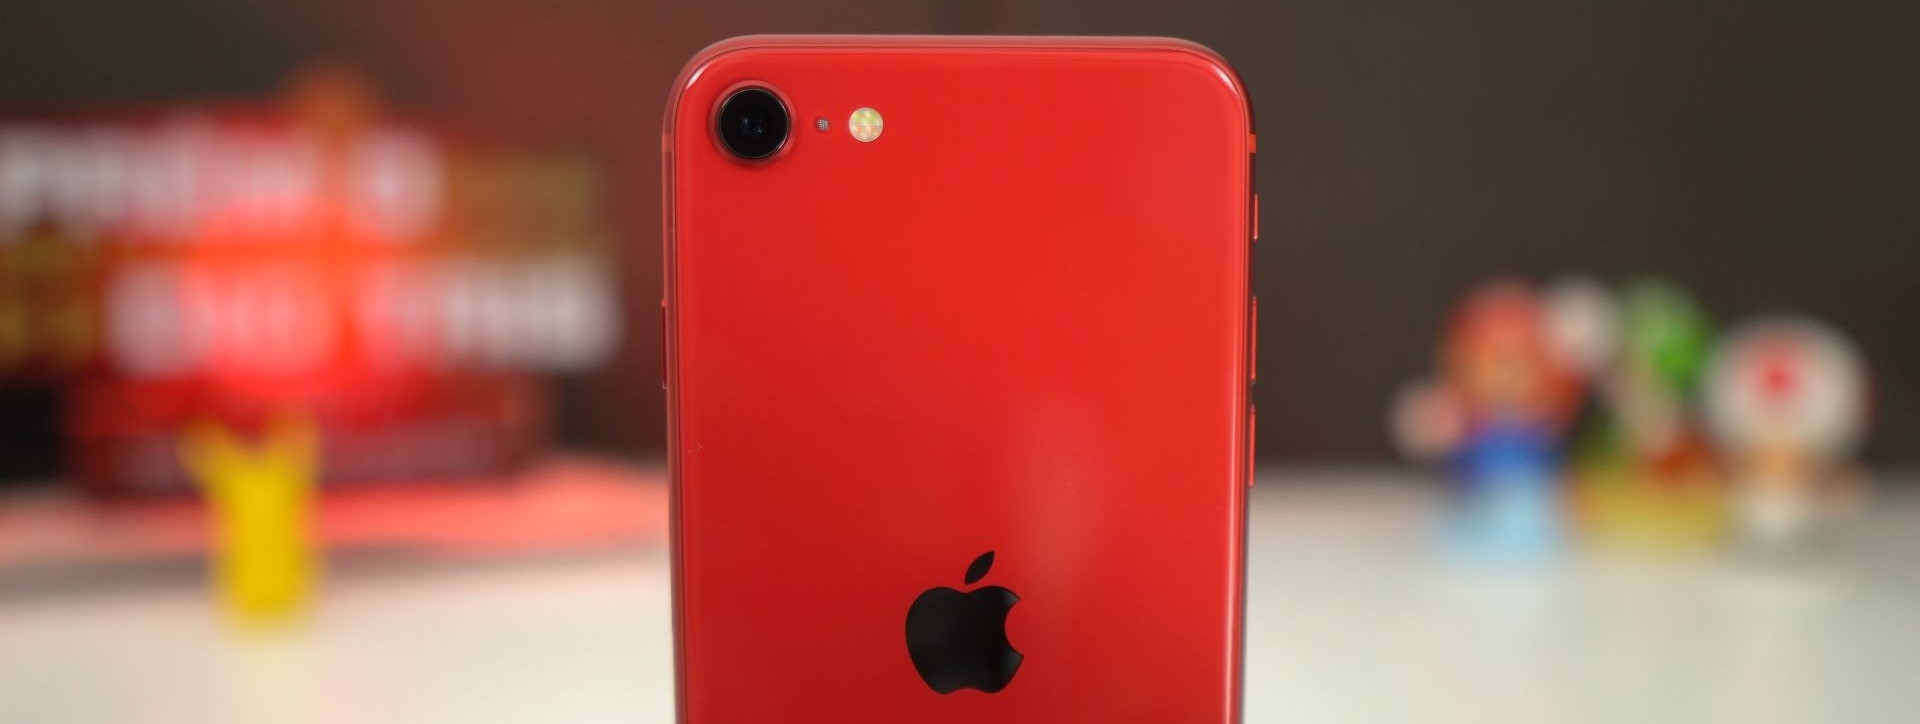 Teste revela: bateria do iPhone SE dura mais que a do iPhone 6s - TecMundo